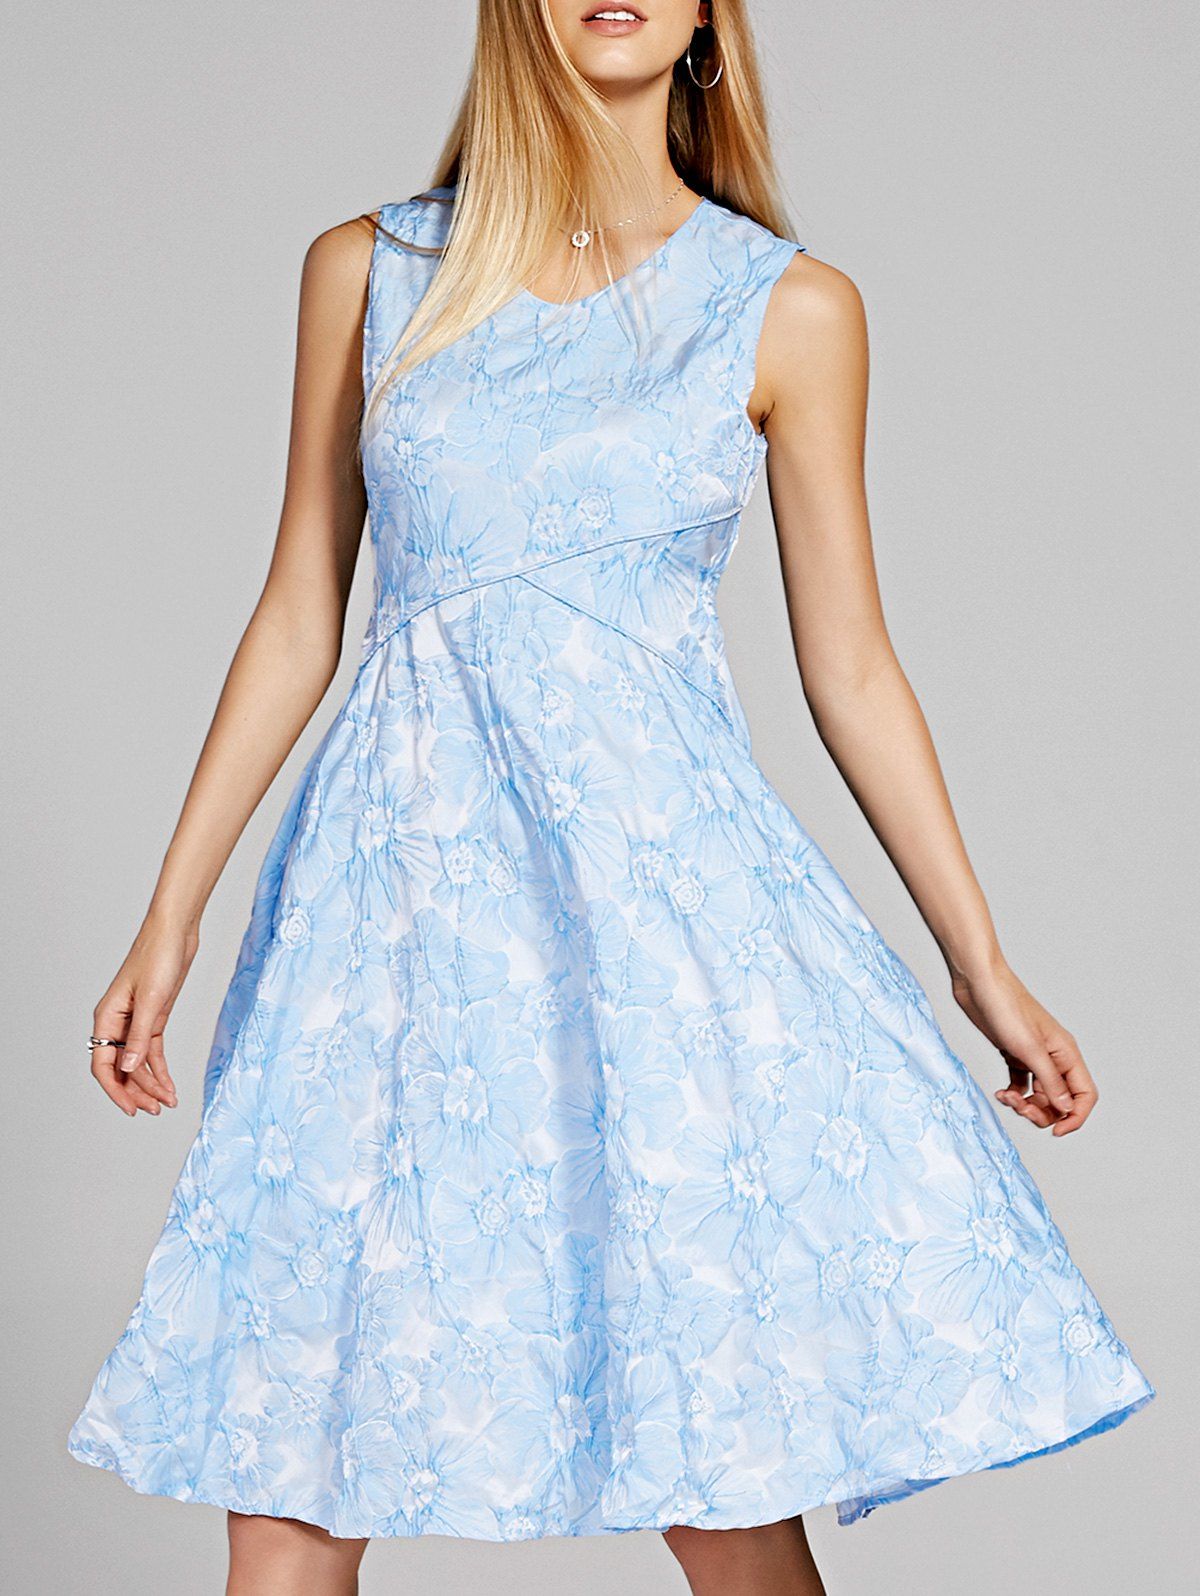 Chic V-Neck Sleeveless Floral Print Skater Dress For Women - LIGHT BLUE L